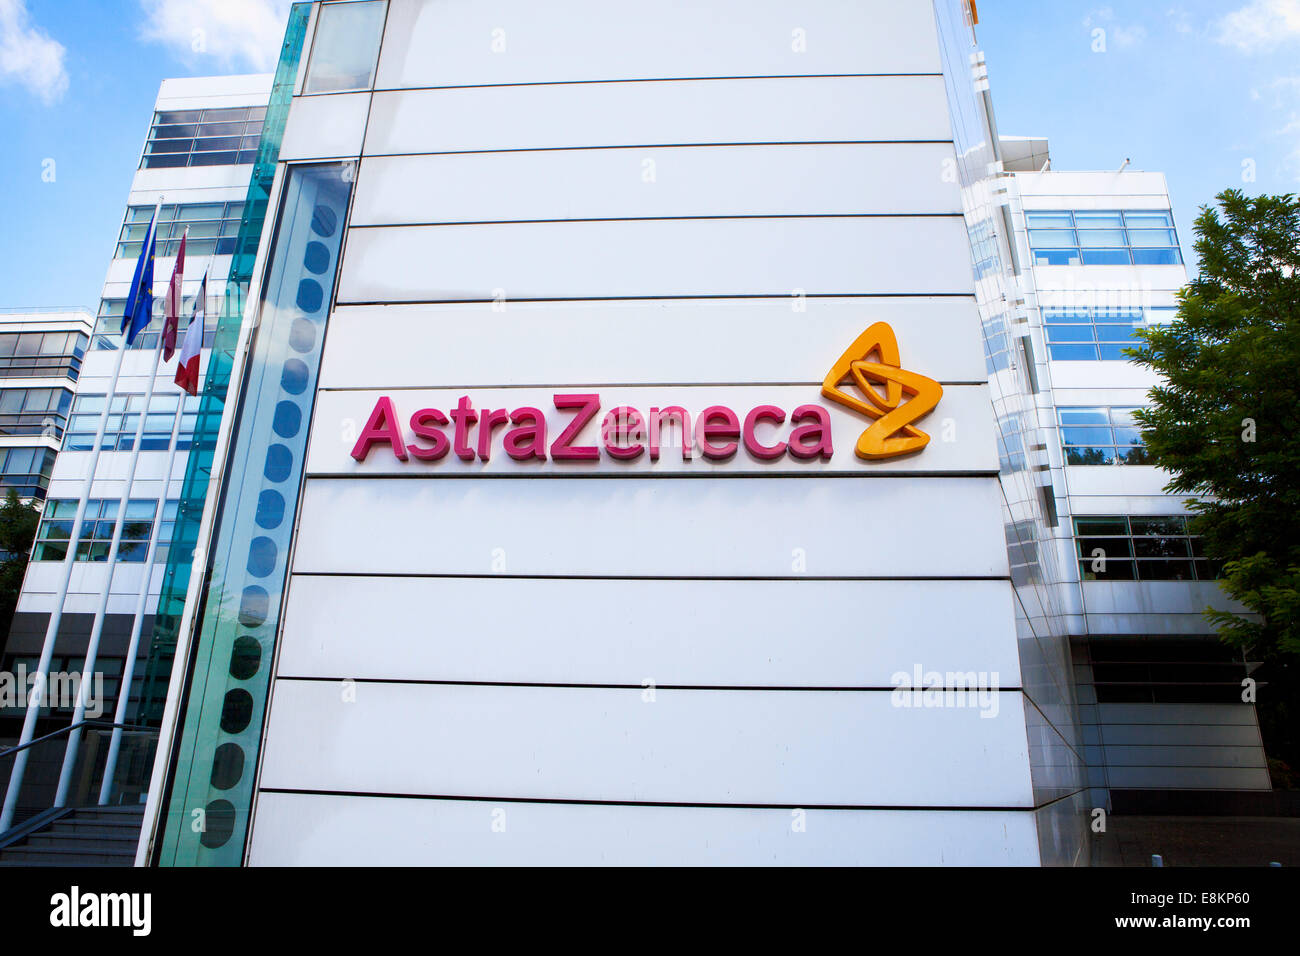 Laboratoire Astrazeneca, Rueil Malmaison. Stock Photo